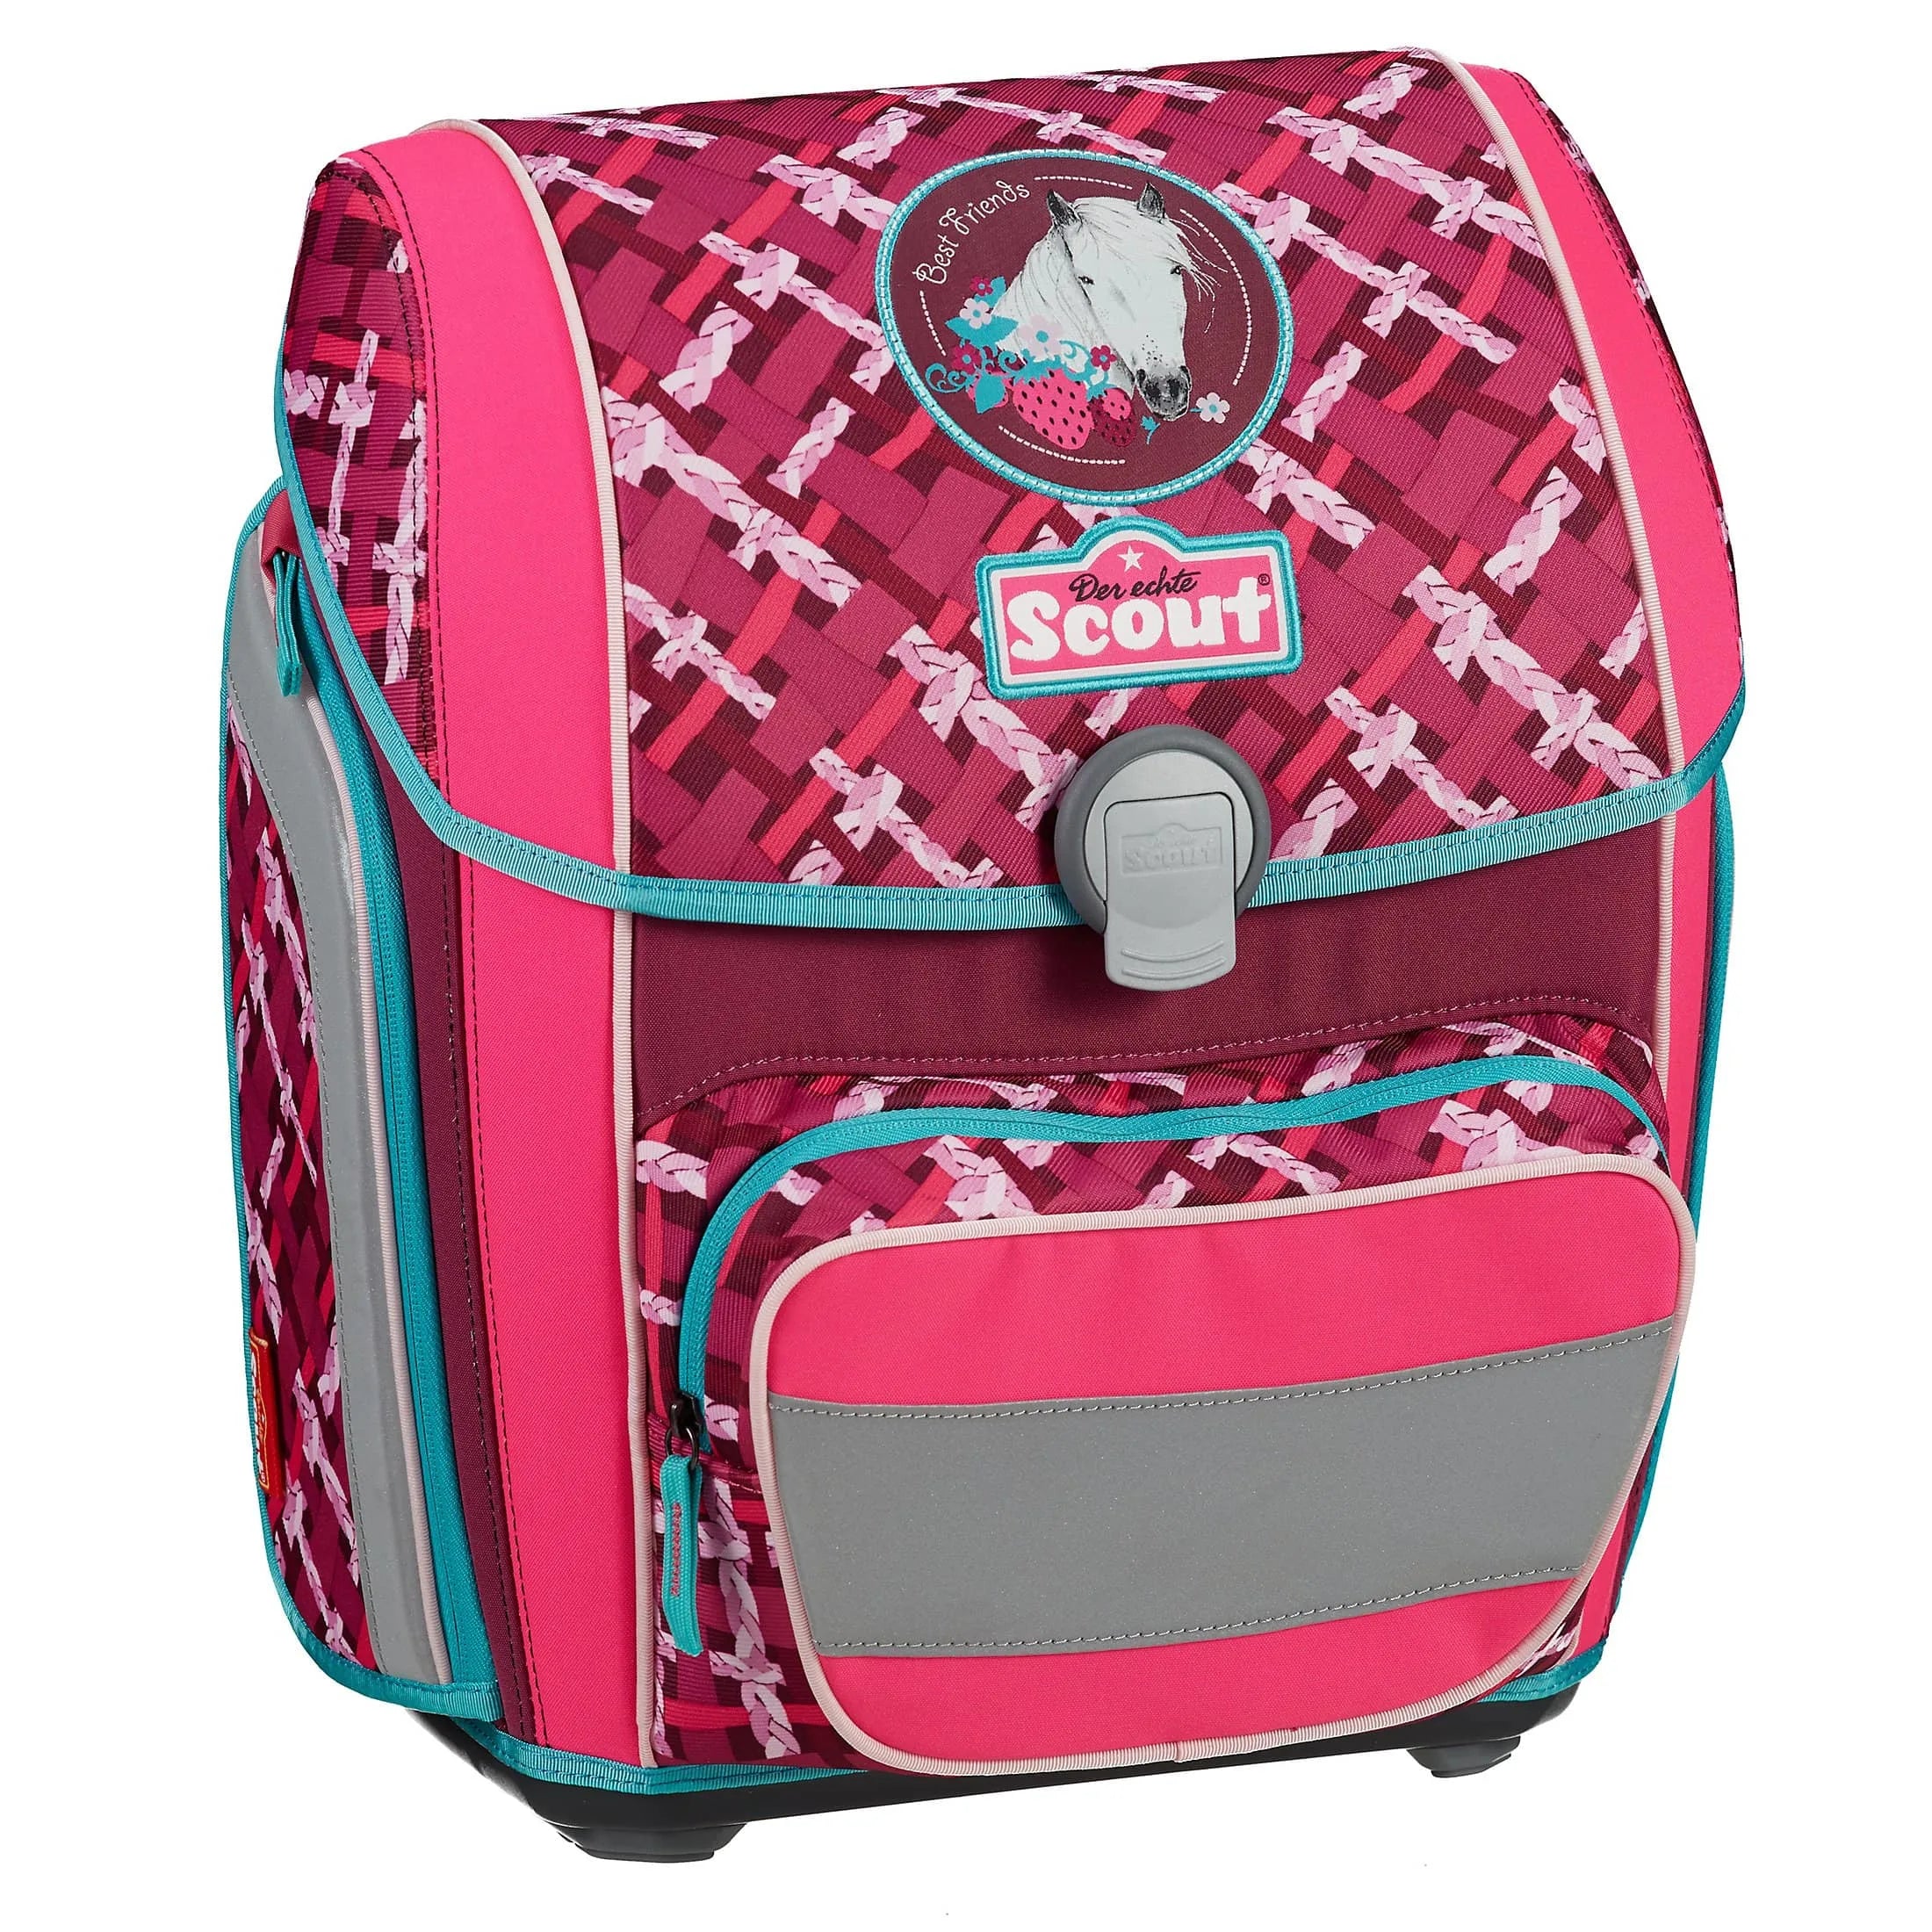 Scout Genius Limited Edition 4-piece satchel set - best friends